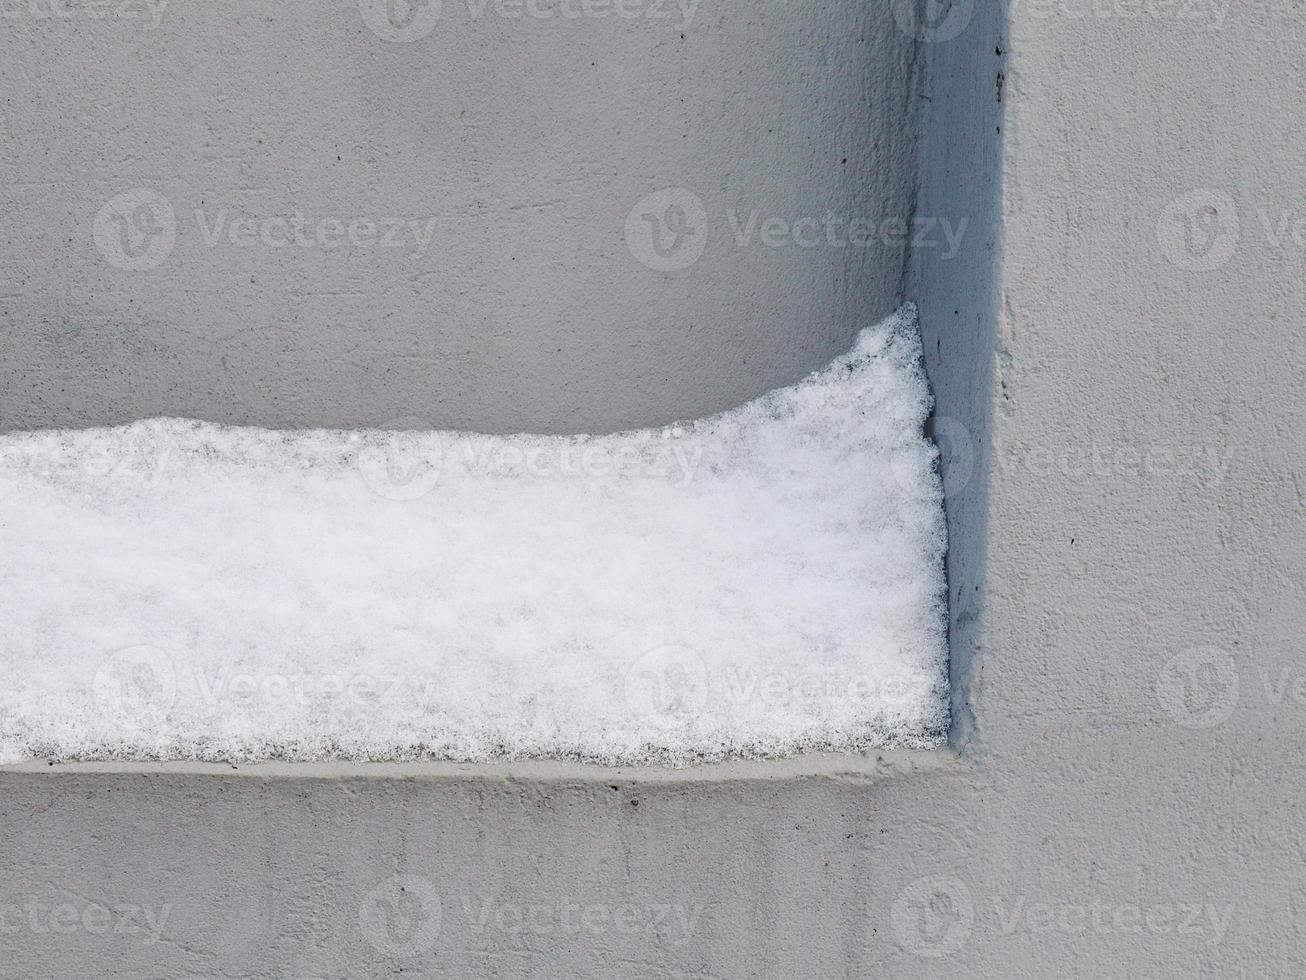 schneeschicht klebte an betoneinbuchtung in grauer kalter wand foto